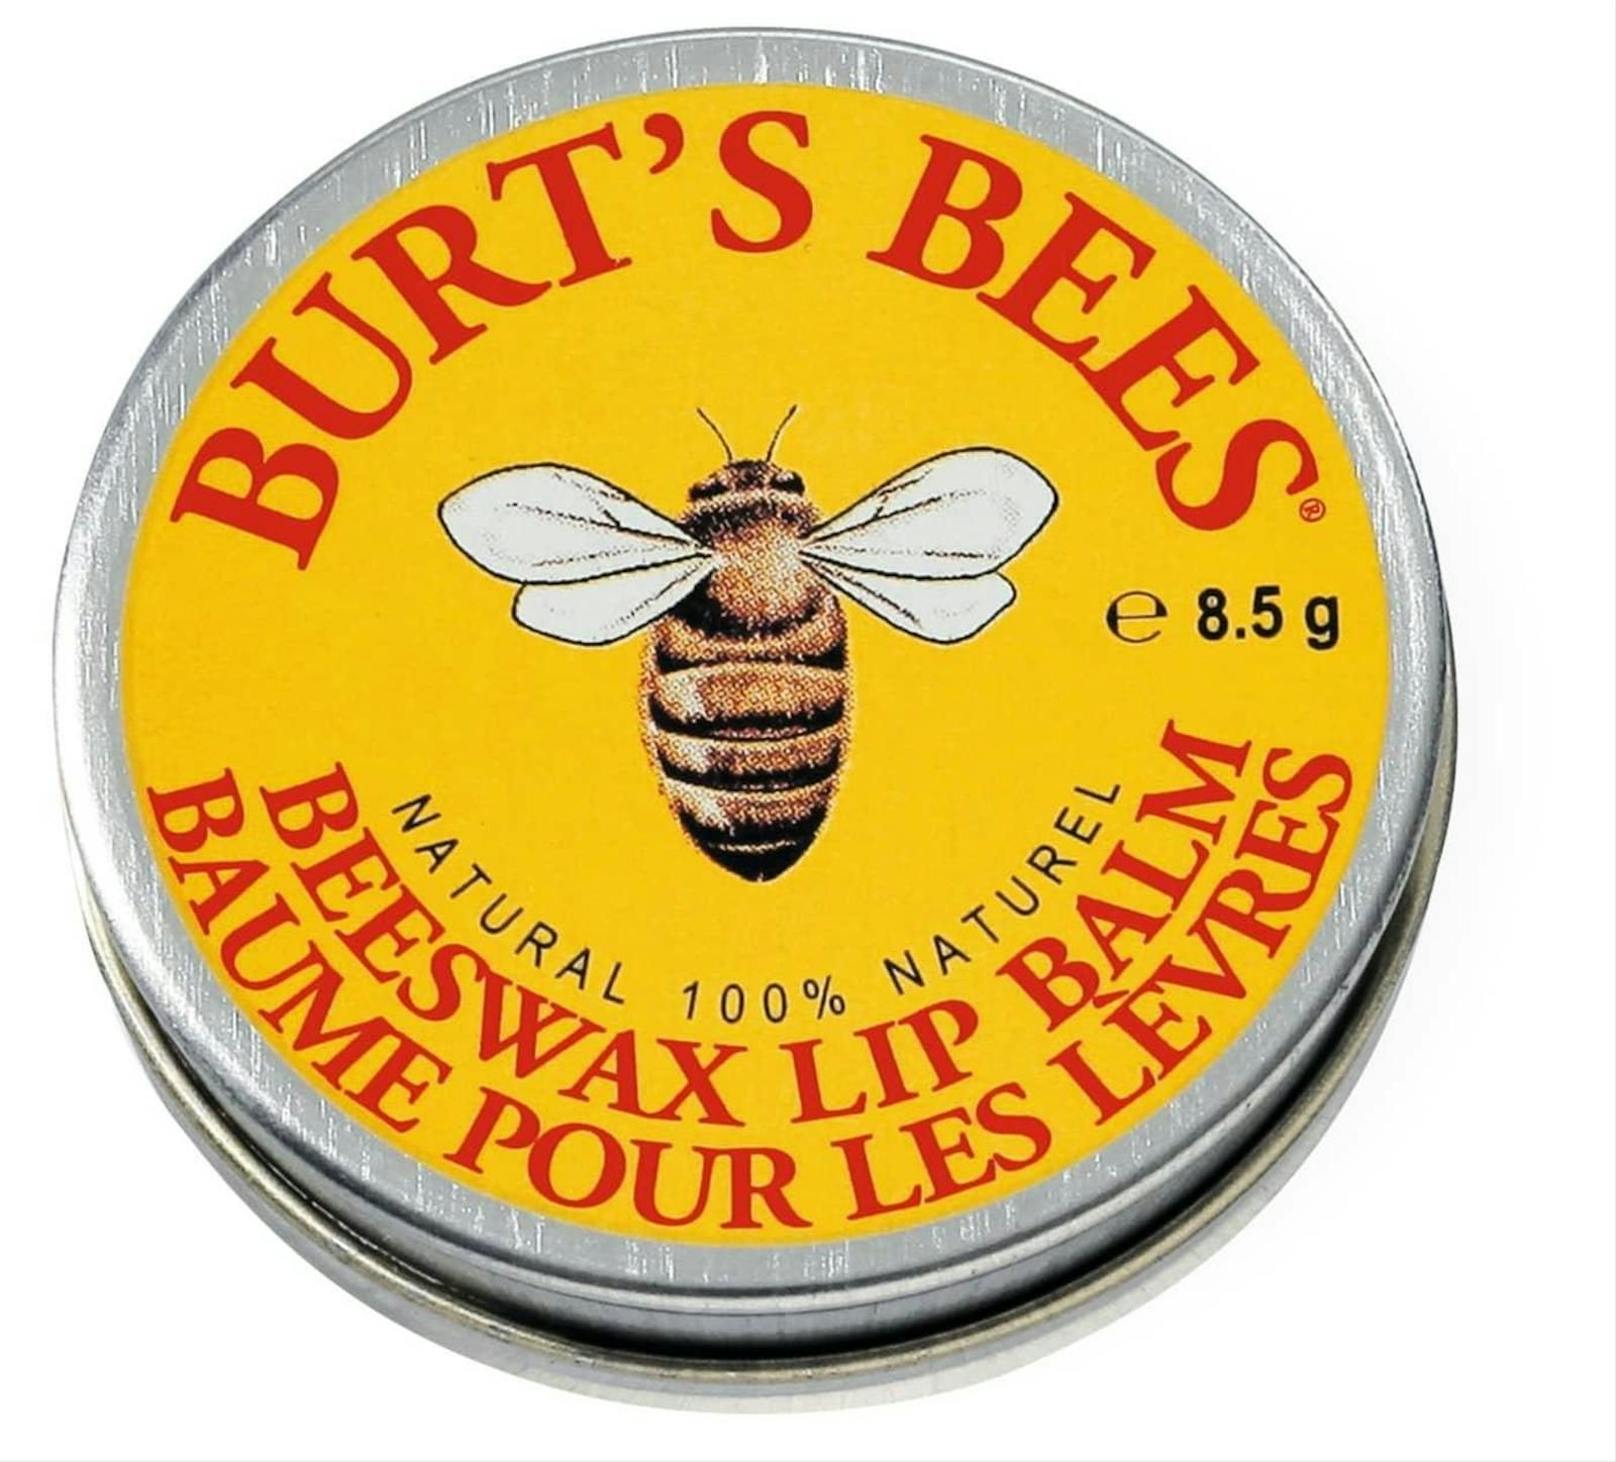 Kokosnuss- und Sonnenblumenöl sowie Bienenwachs halten die Feuchtigkeit in der Haut zurück. Burt's Bees Lip Balm Beeswax, 4,95 Euro auf<a href="https://www.parfumdreams.at/Burts-Bees/Pflege/Lippen/Beeswax-Lip-Balm-Tin/index_29609.aspx?AffId=GA_AT2_PLA_Burts-Bees&amp;wt_mc=adwords_nonbrand-AT.cpc.pla-at&amp;gclid=CjwKCAiAzNj9BRBDEiwAPsL0d8suq86Cz0FzkgfM4EwADXxOqYfL9t8B-XWcm5v7s8Ekv7DuKw43UxoCVcUQAvD_BwE">&nbsp;parfumdreams.at.</a><br>